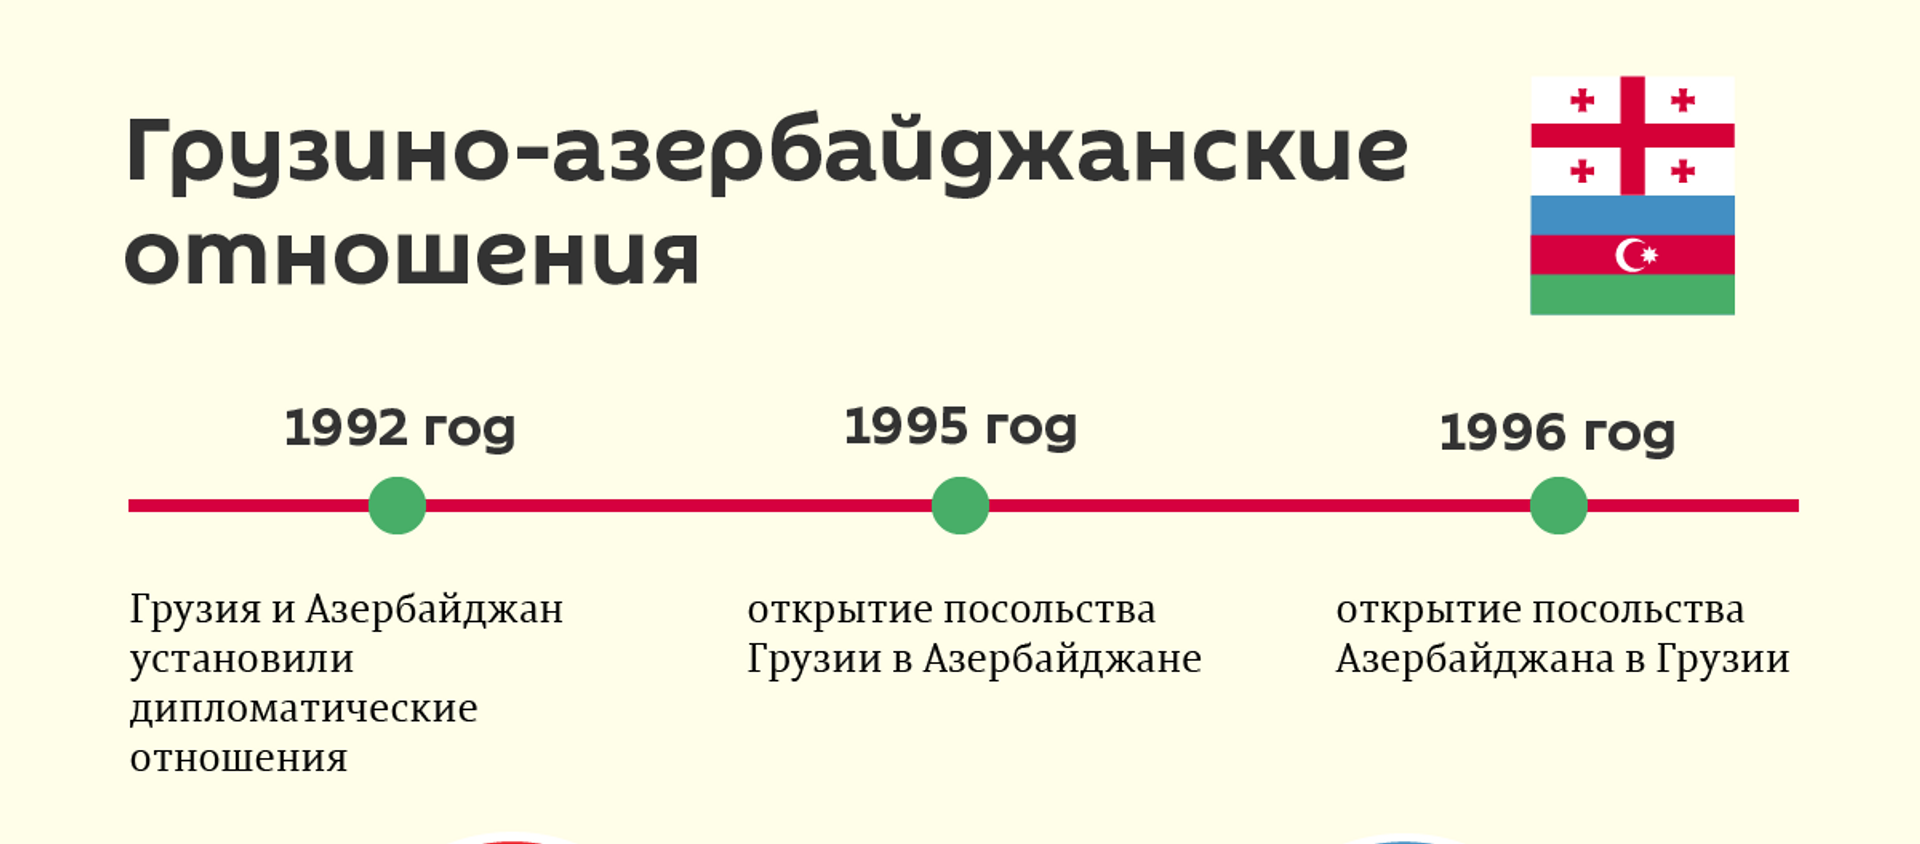 Грузино-азербайджанские отношения - главное - Sputnik Грузия, 1920, 05.05.2021